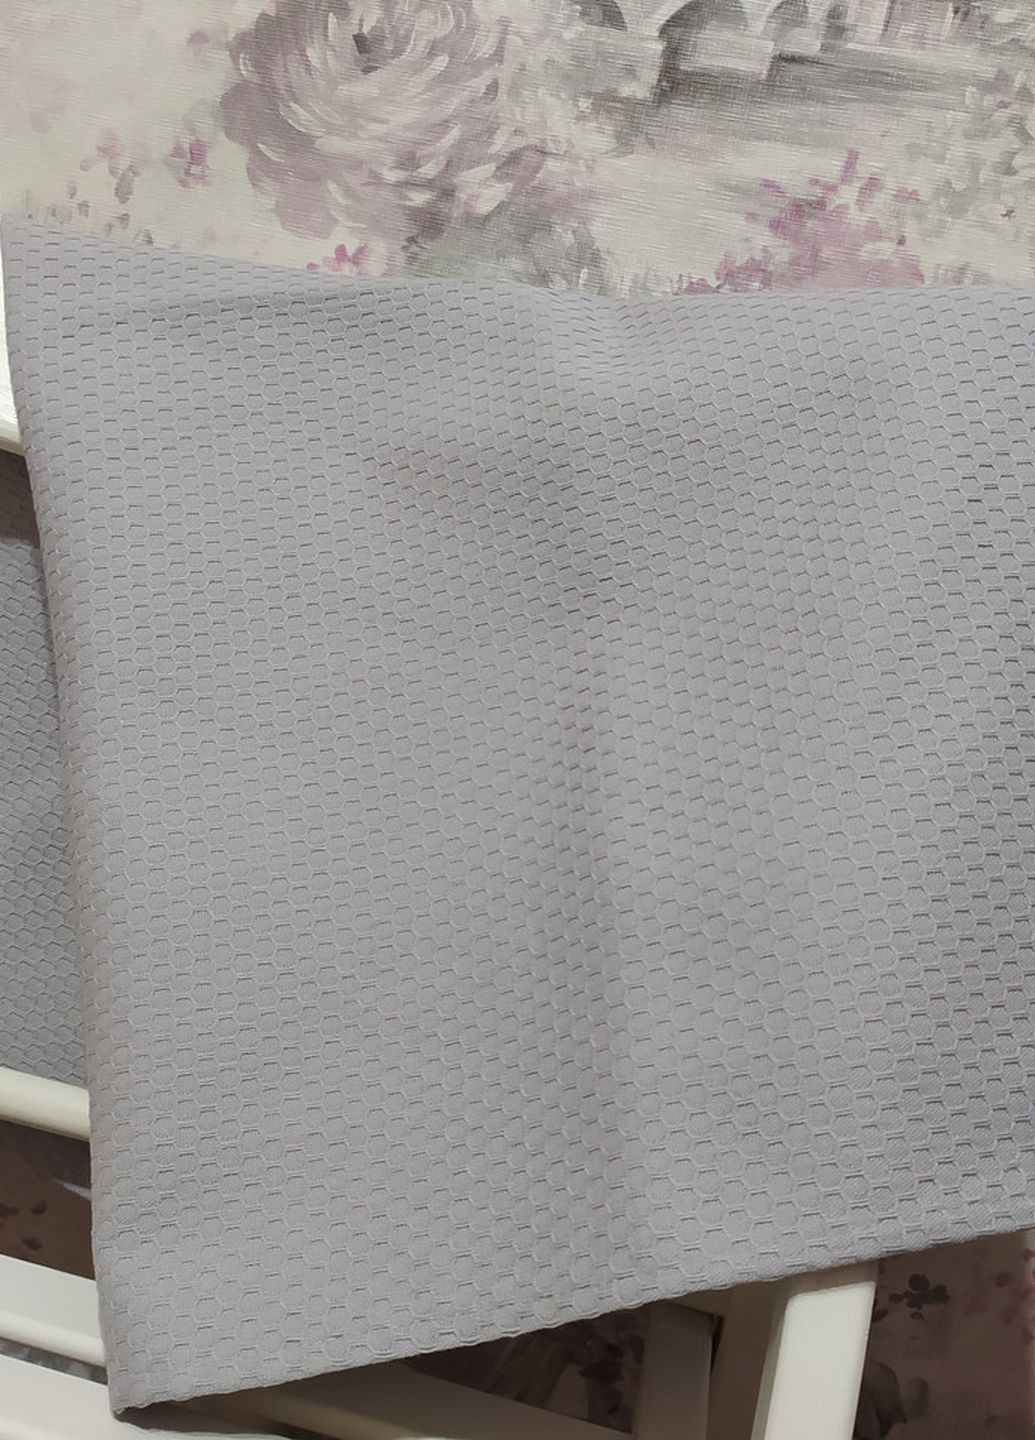 No Brand полотенце вафельное для лица 50*90 серый (03886) серый производство - Украина